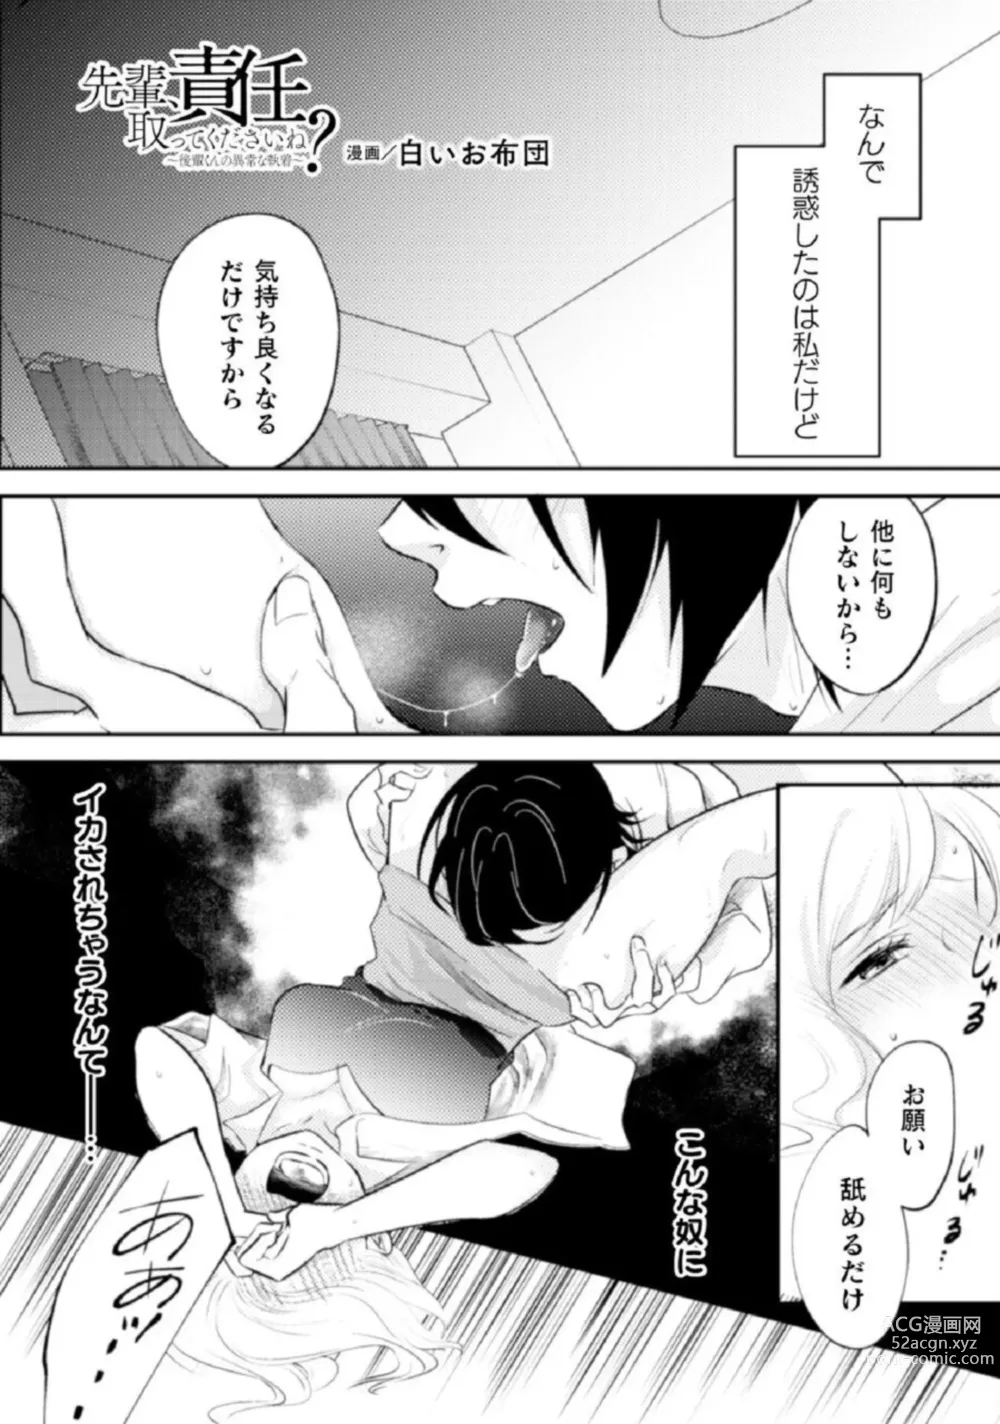 Page 16 of manga Shokorashukureansorojī Ibitsuai ～ Yandere Kareshi no Omoi ai ni Kakowarete ～Vol.2